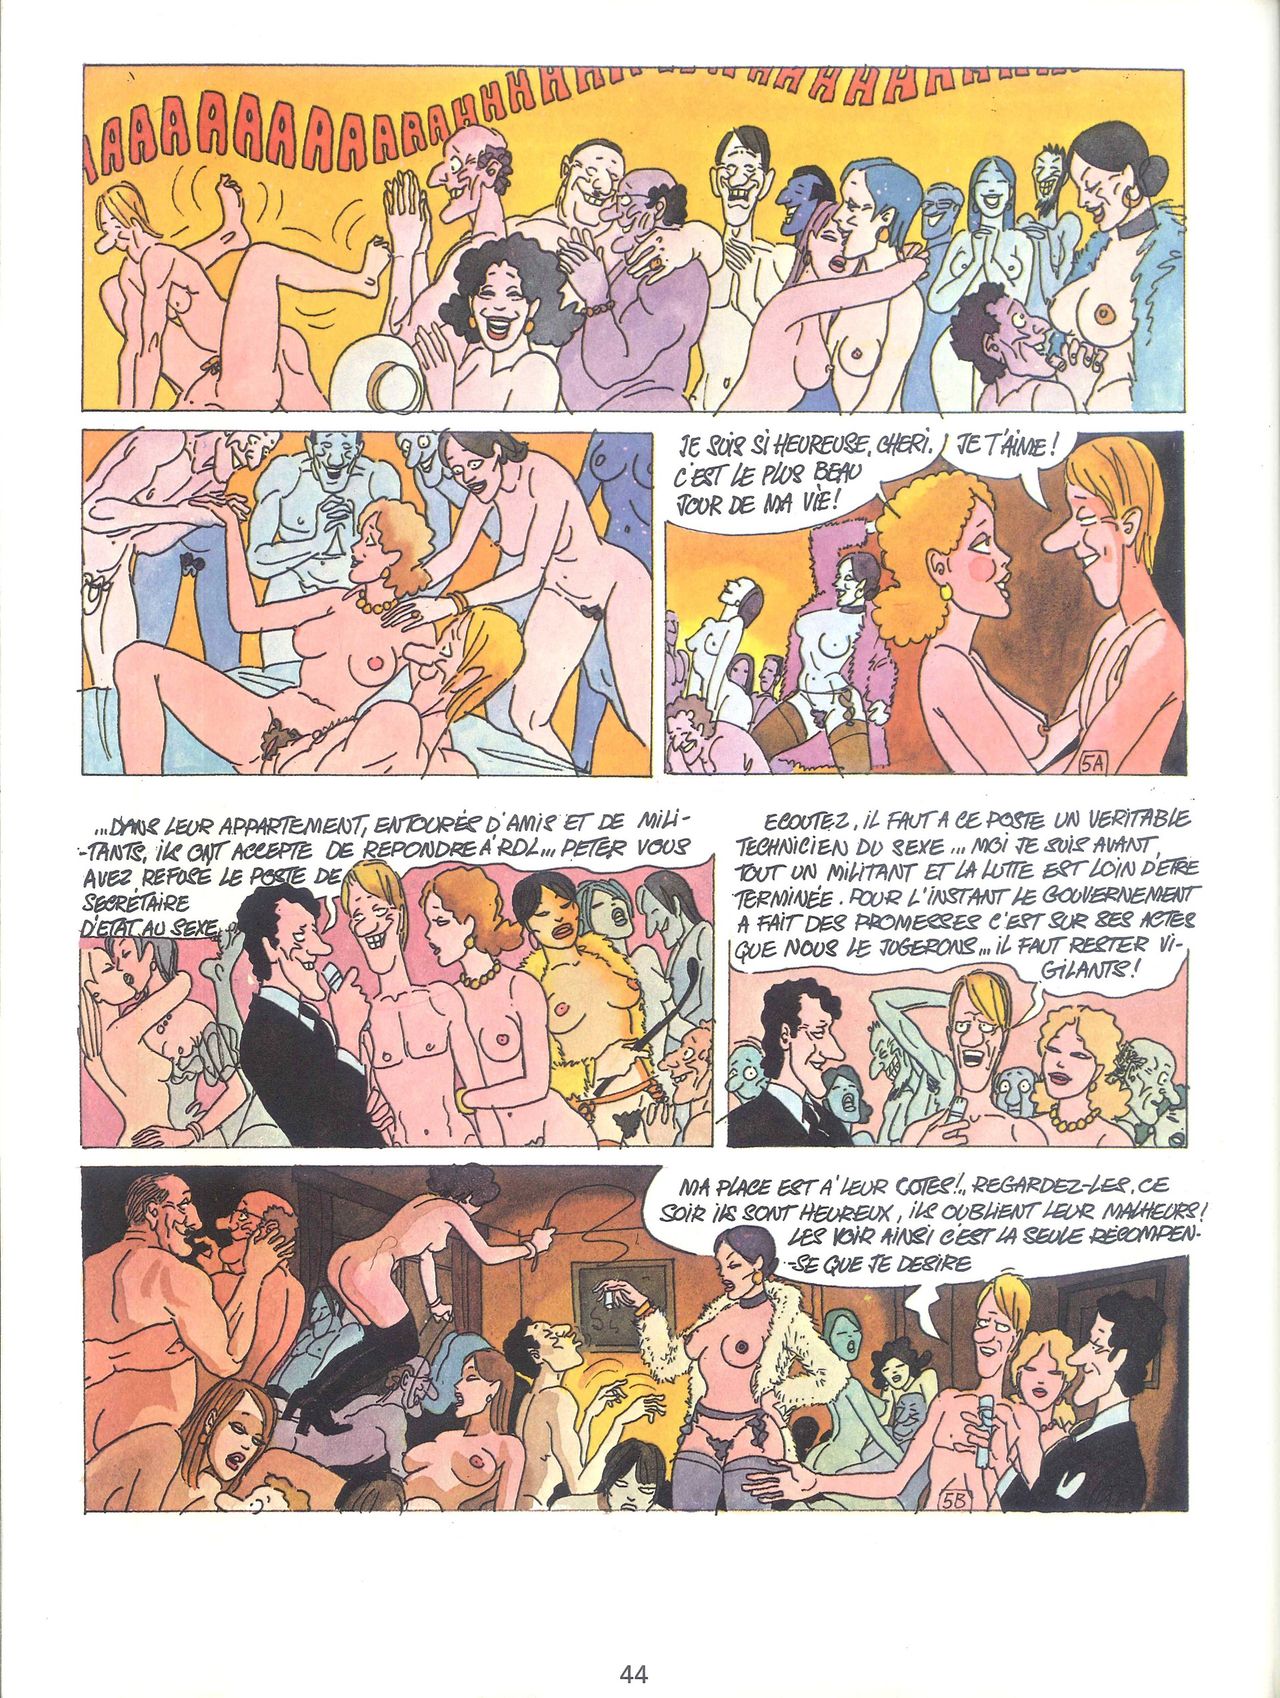 Les sextraordinaires aventures de Zizi et Peter Panpan numero d'image 46